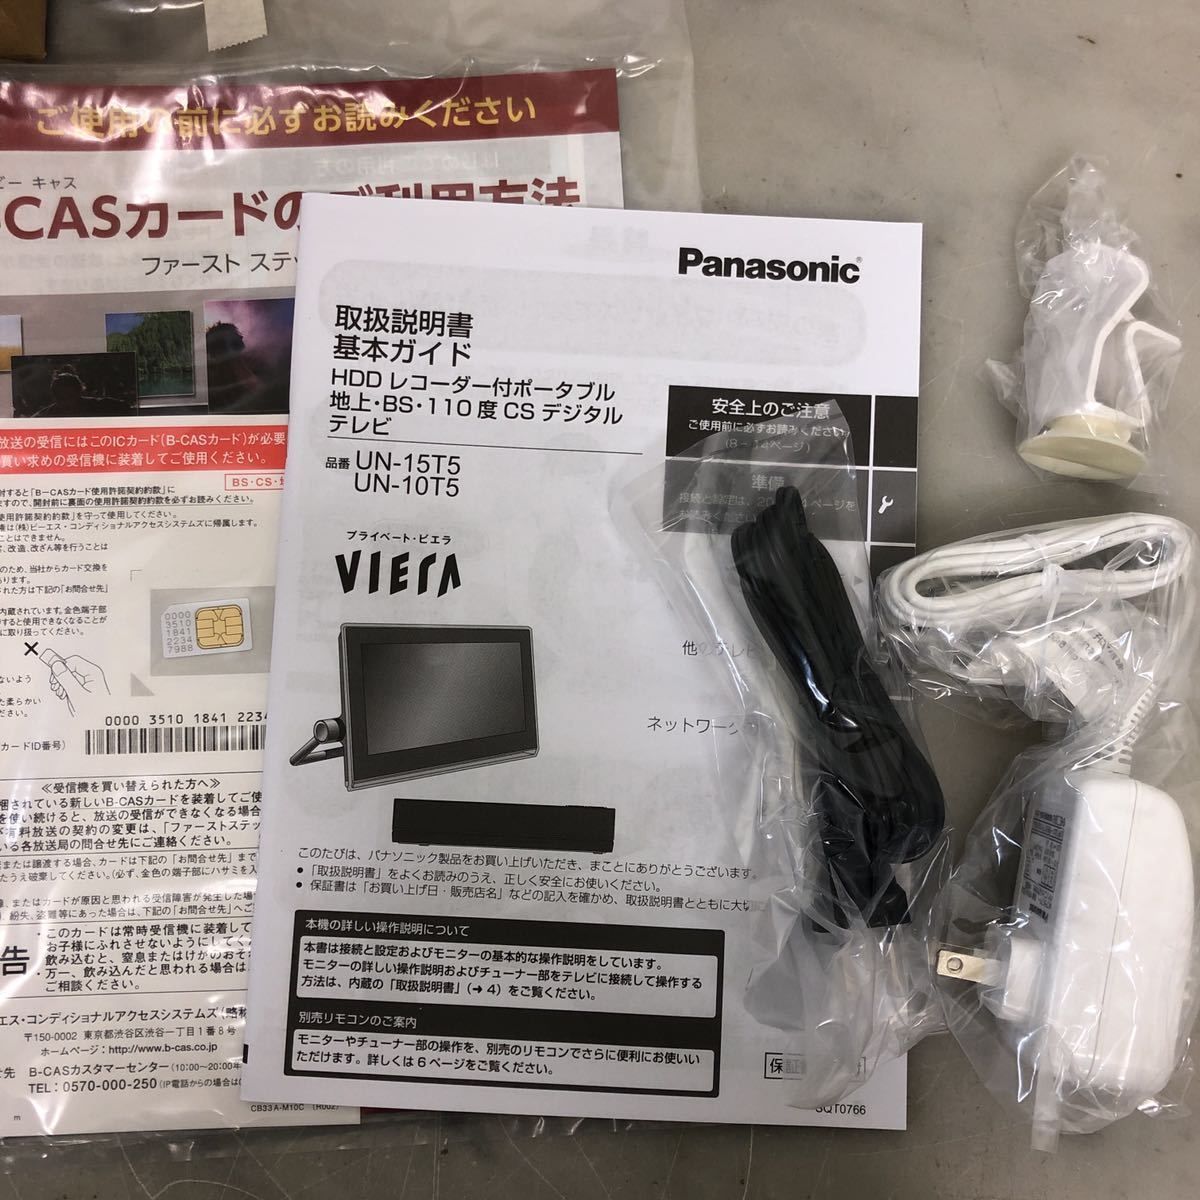 Panasonic ビエラ パナソニック ポータブル 液晶テレビ 110度CS